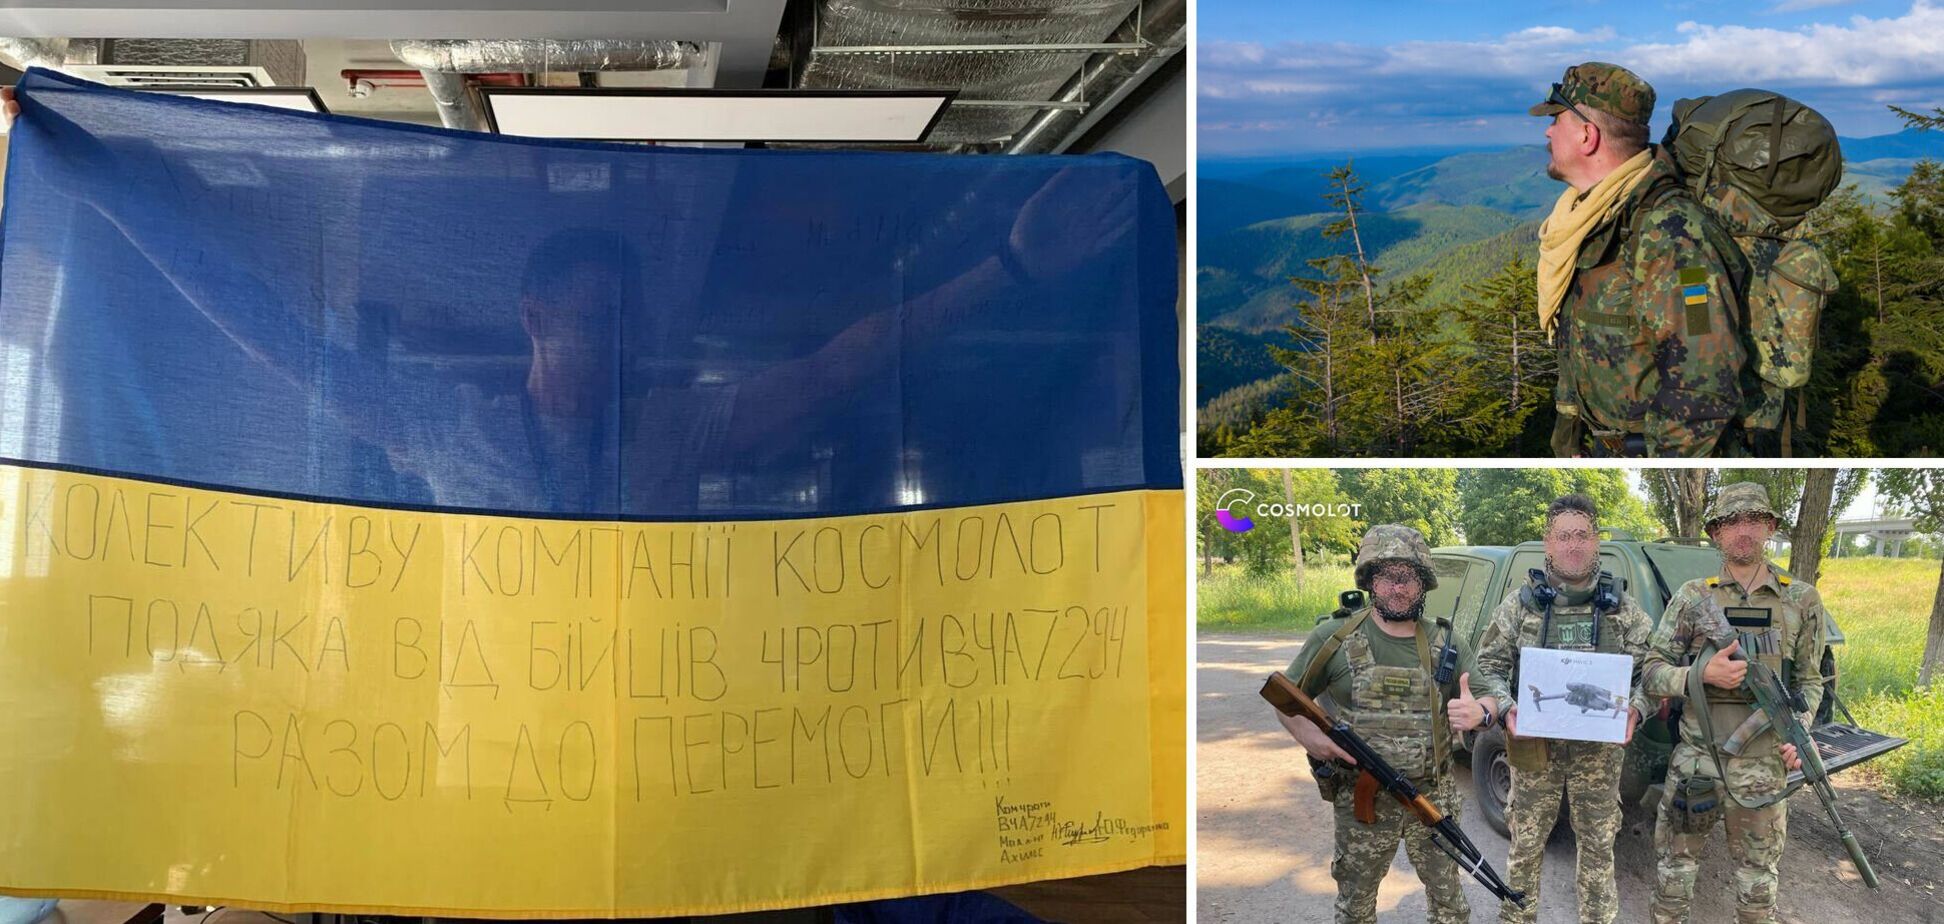 Гуманитарный фронт Cosmolot: истории неравнодушных людей из украинского гемблинга